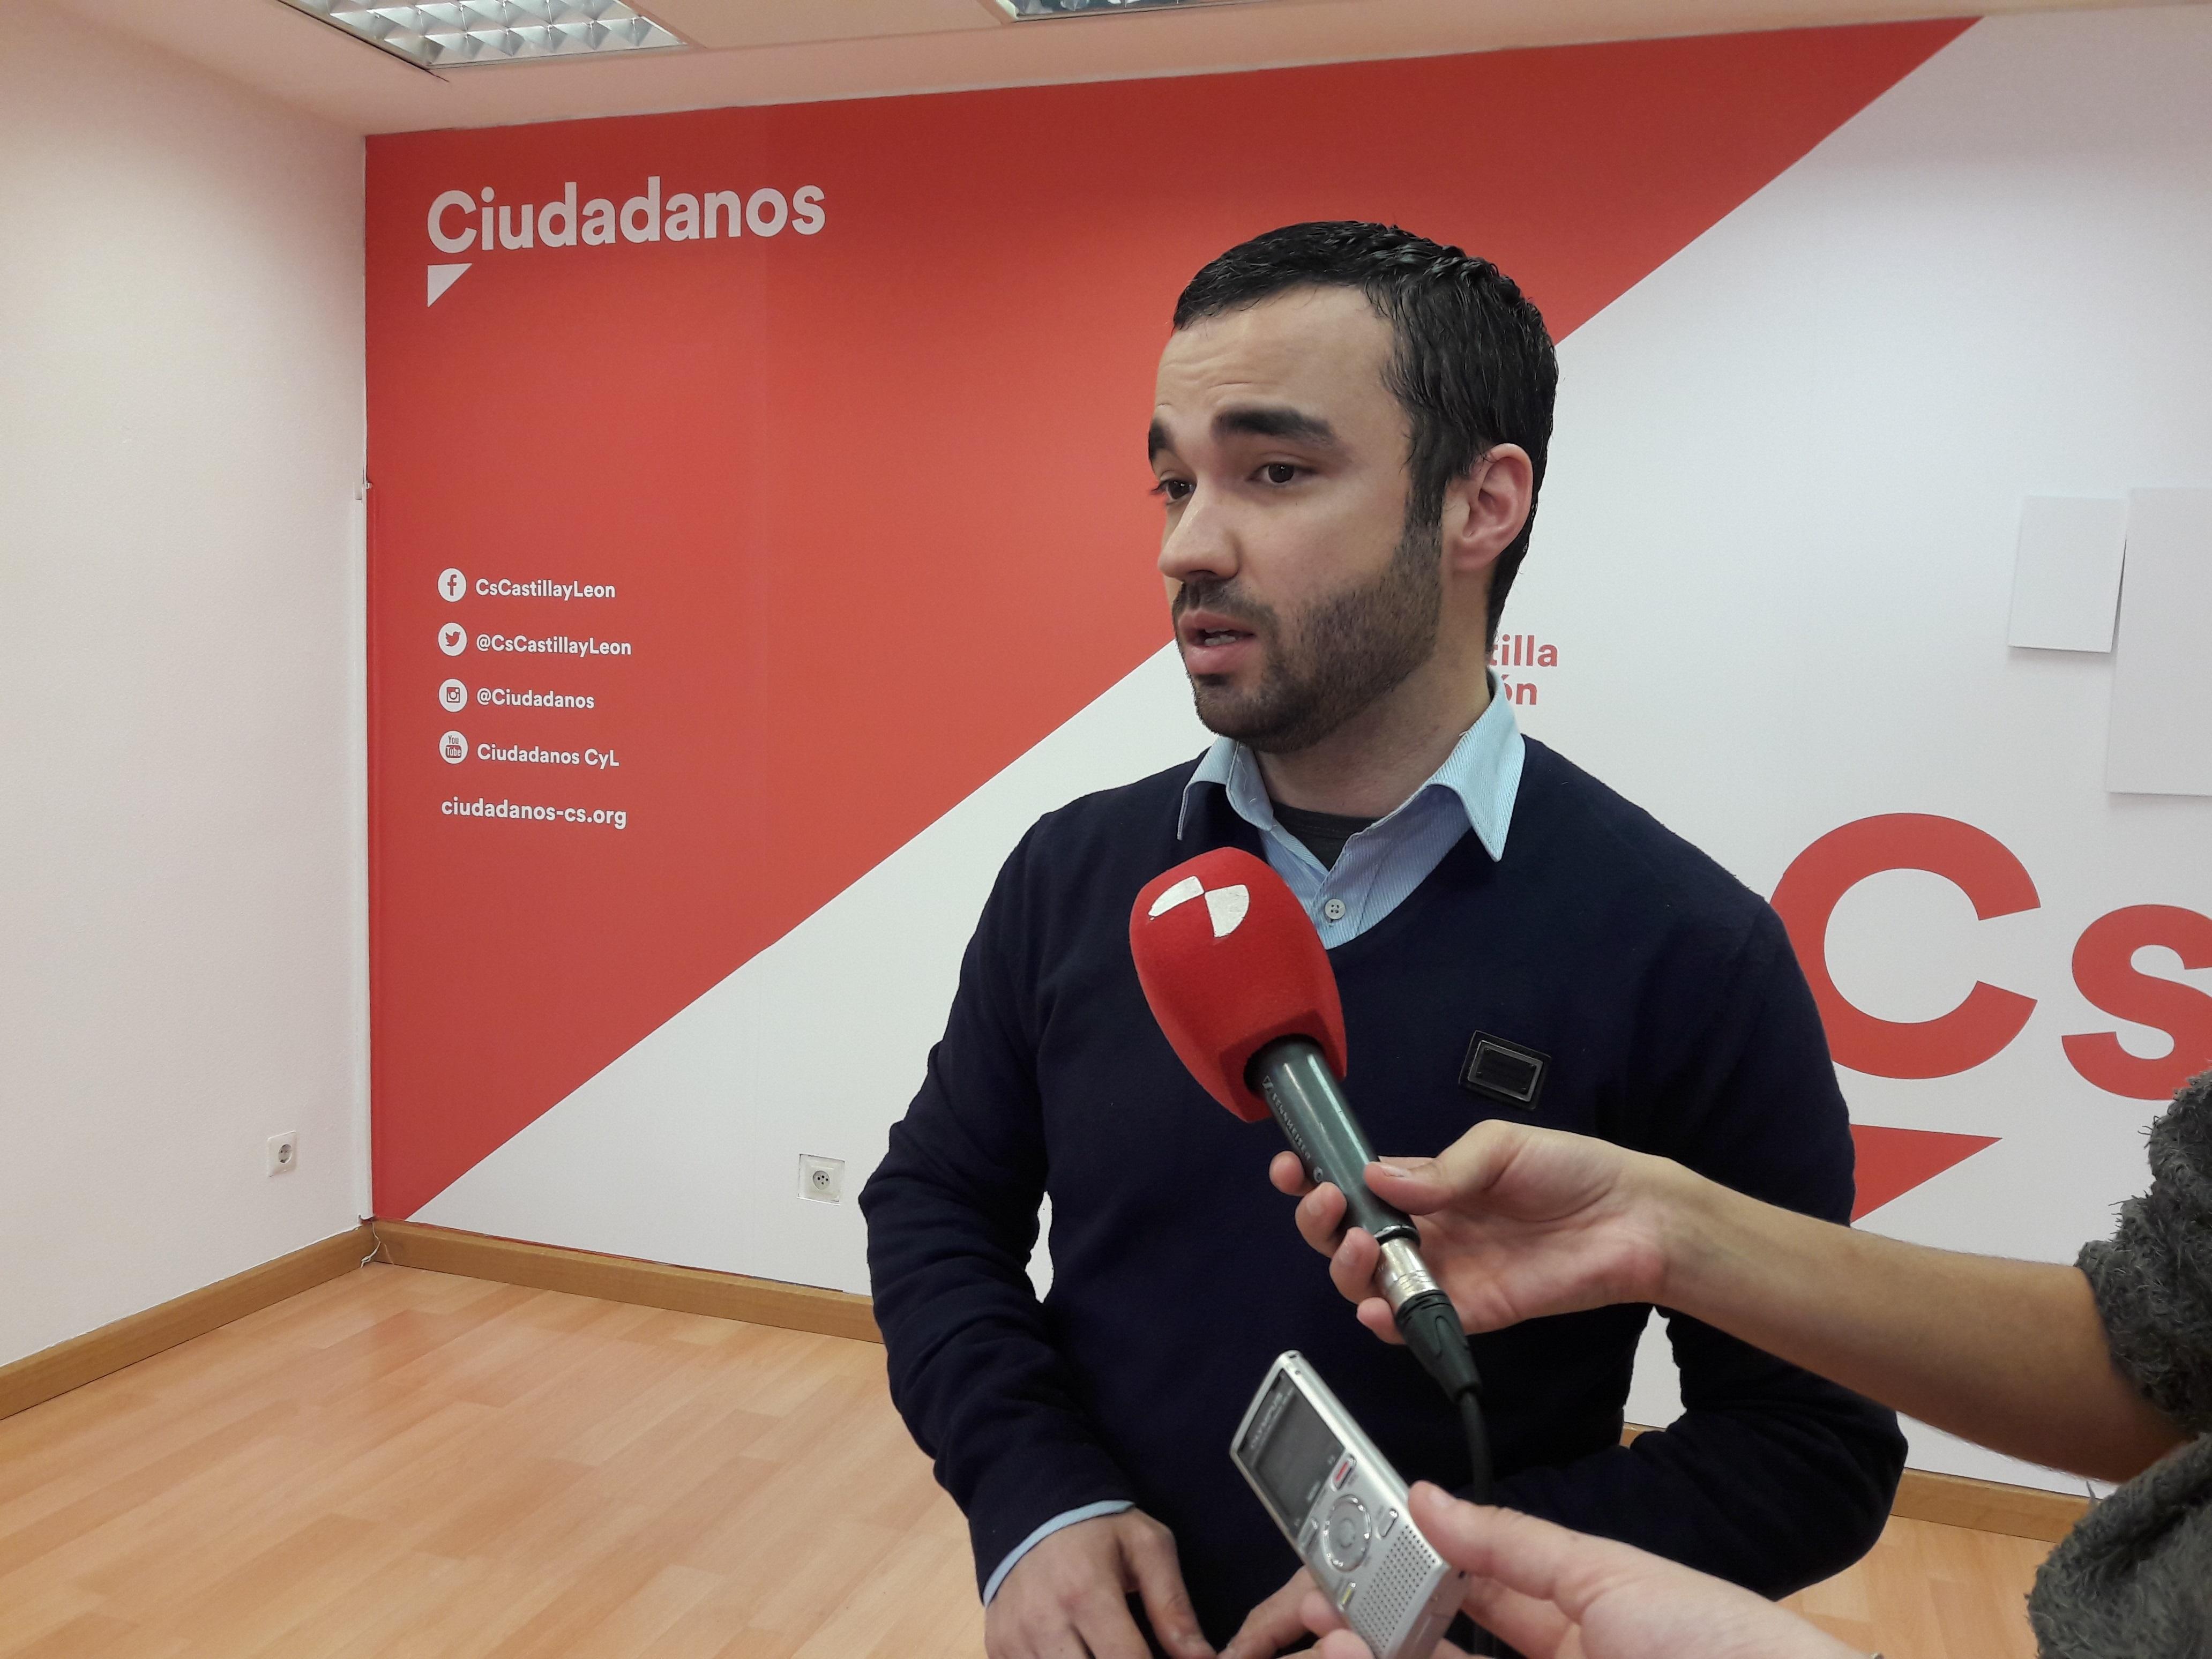 El exsecretario de comunicación de Ciudadanos en Castilla y León, Pablo Yáñez